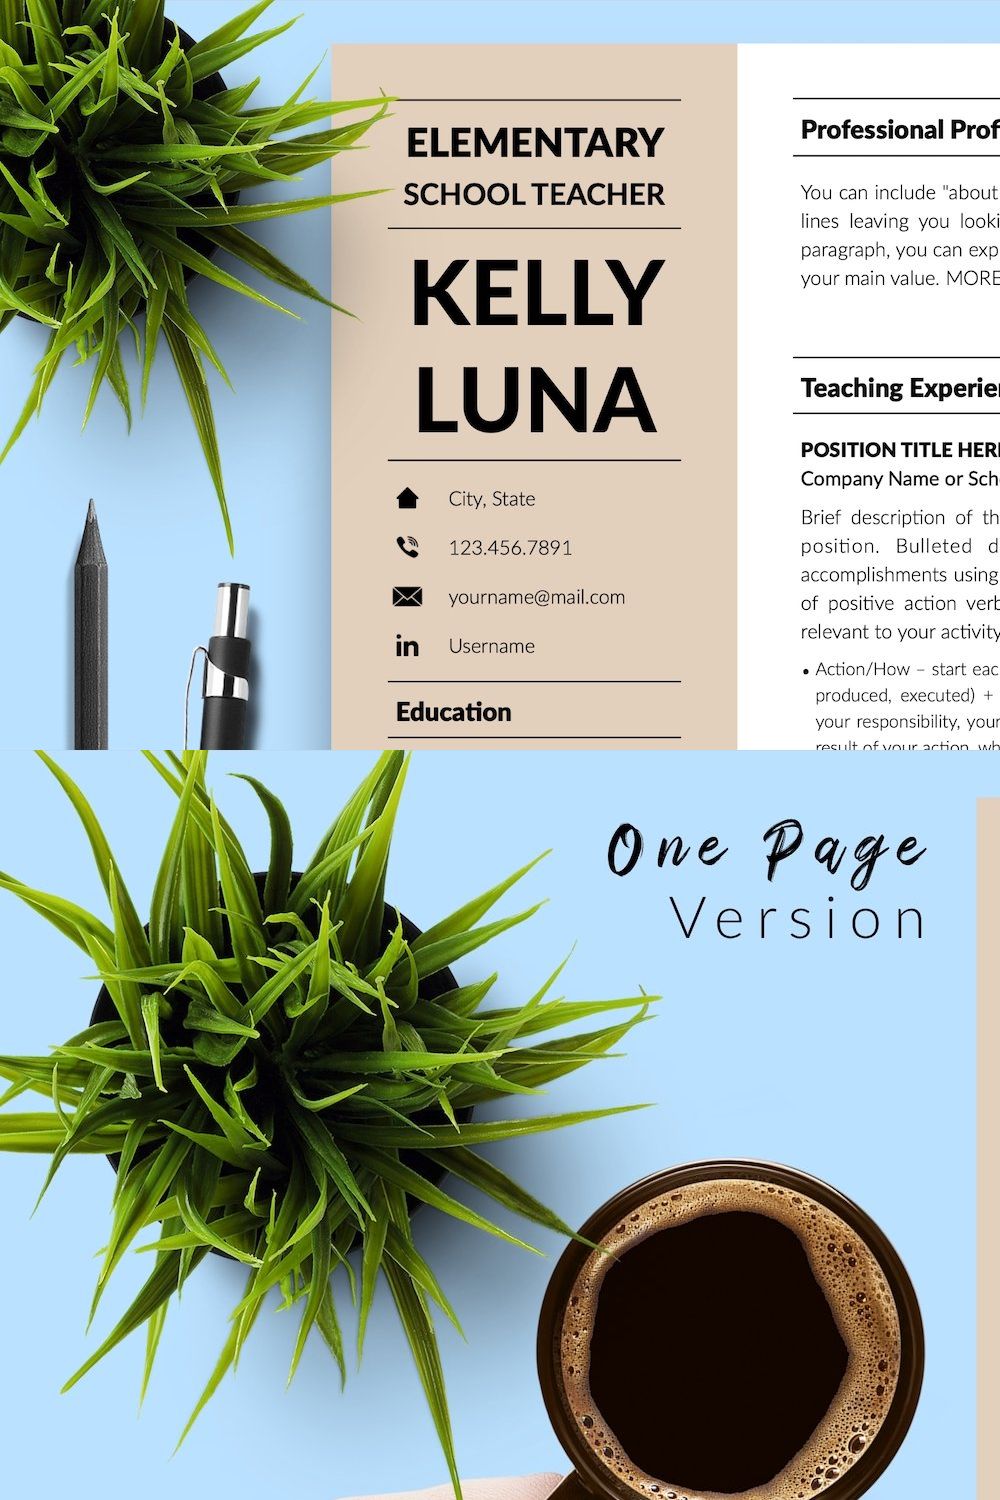 Teacher CV Design / Resume - Kelly pinterest preview image.